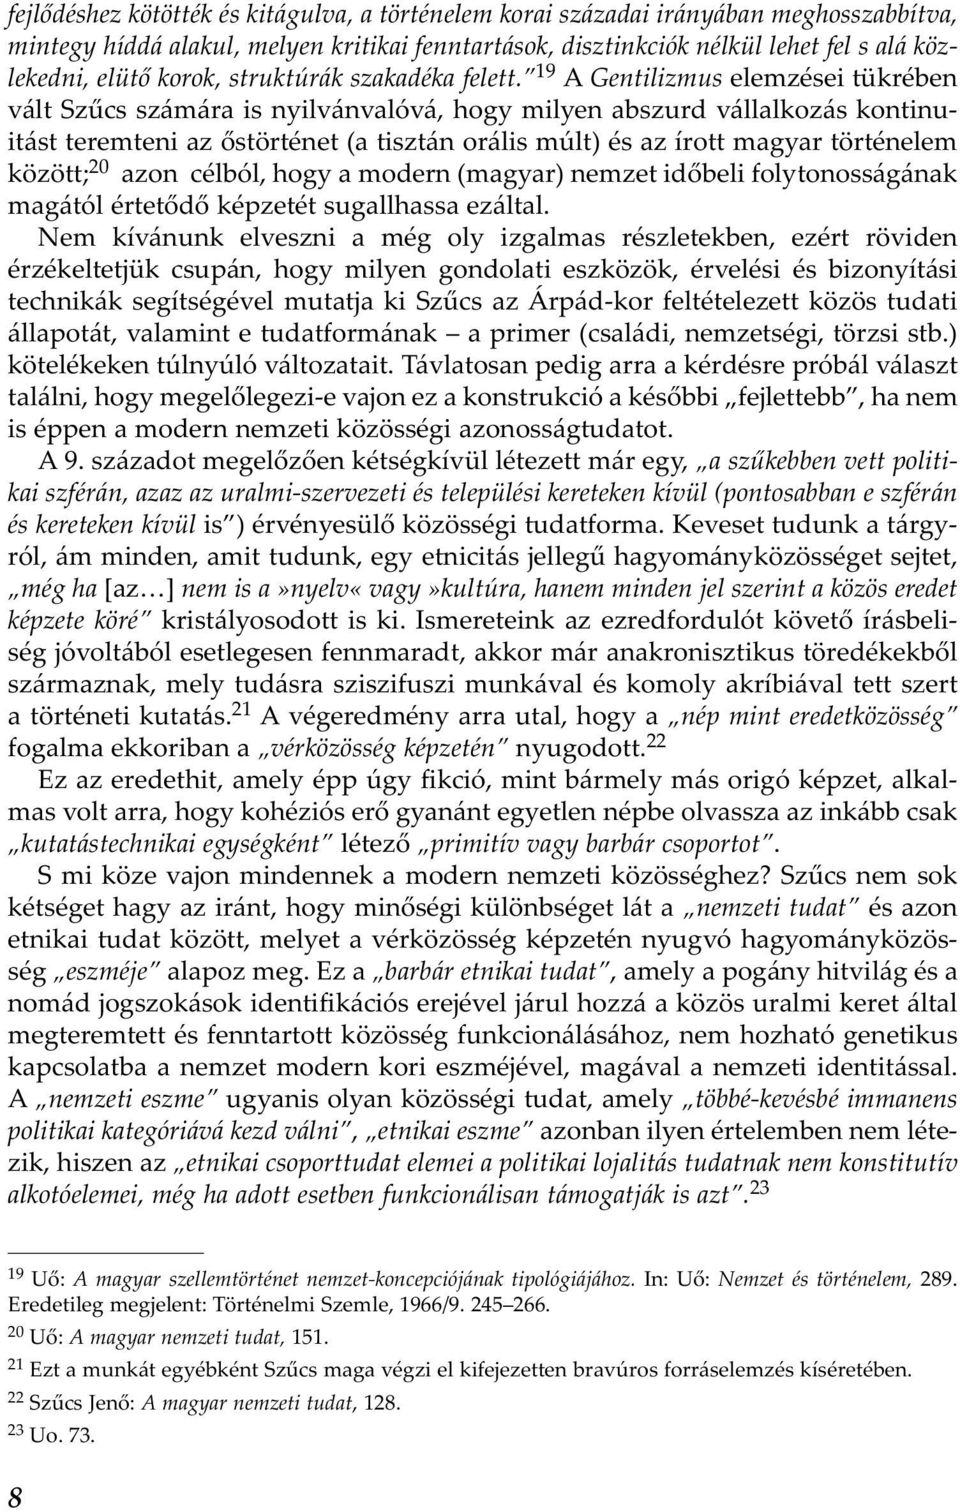 19 A Gentilizmus elemzései tükrében vált Szűcs számára is nyilvánvalóvá, hogy milyen abszurd vállalkozás kontinuitást teremteni az őstörténet (a tisztán orális múlt) és az írott magyar történelem